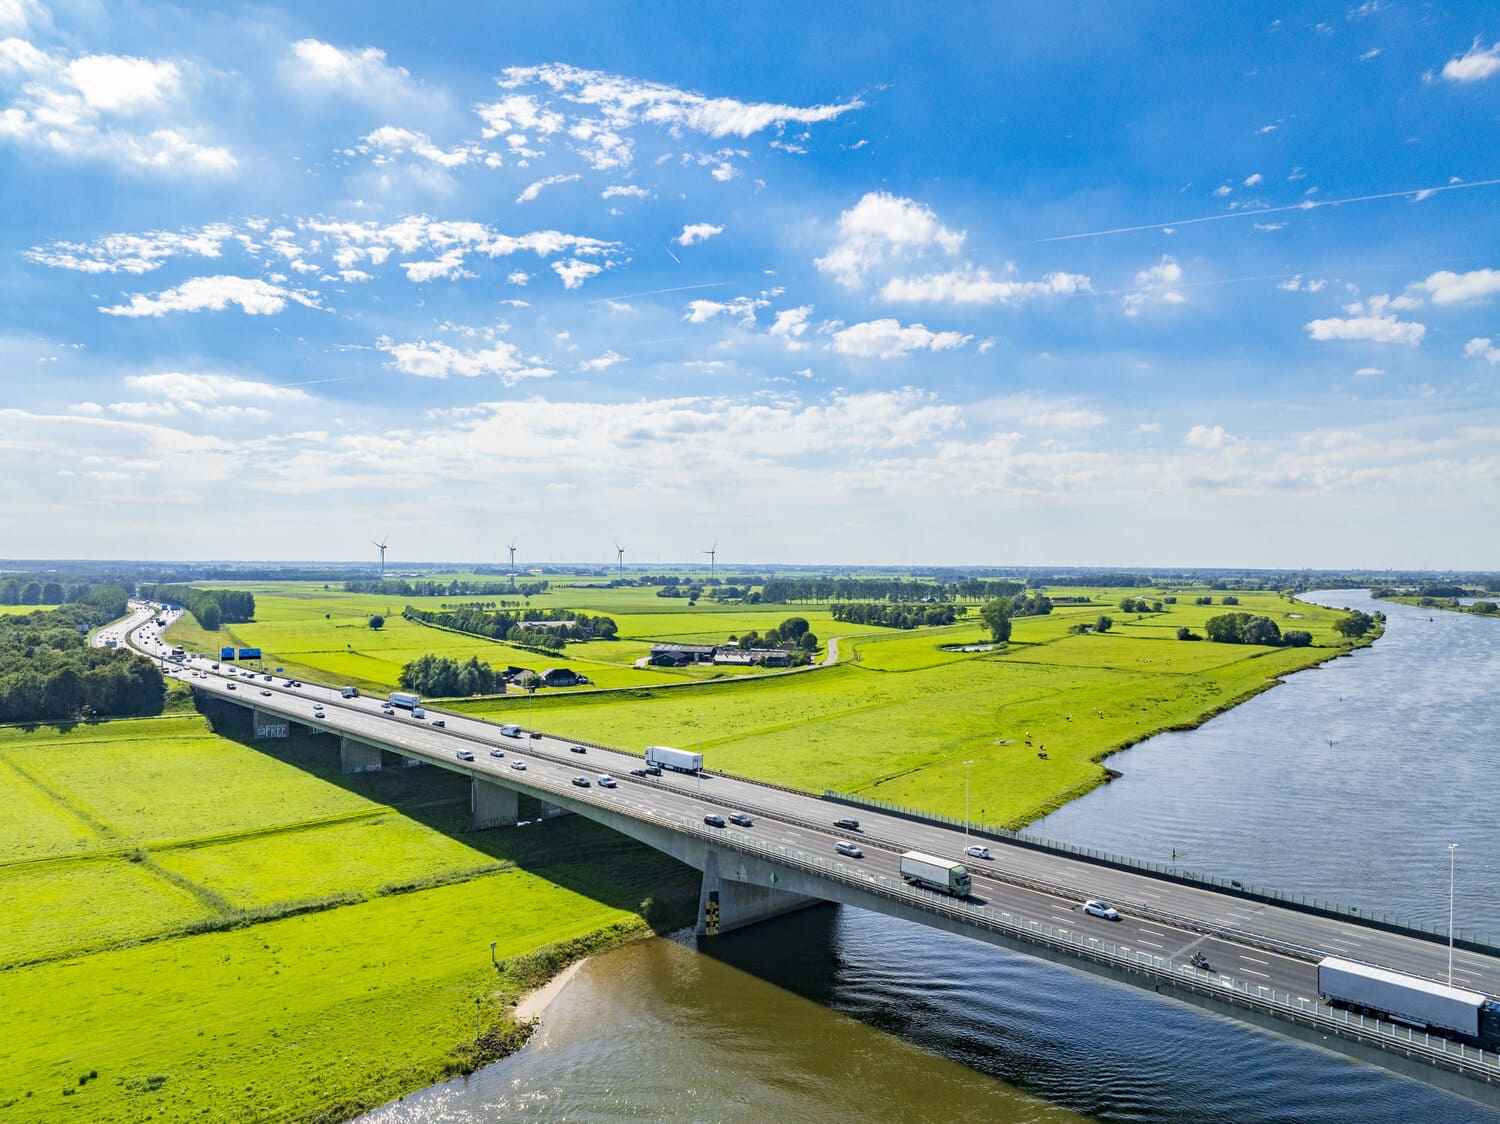 Вид с воздуха на голландский пейзаж с длинным автомобильным мостом через реку. Мост окружен пышными зелеными полями и сельскохозяйственными угодьями. Видно, как по мосту едут машины.